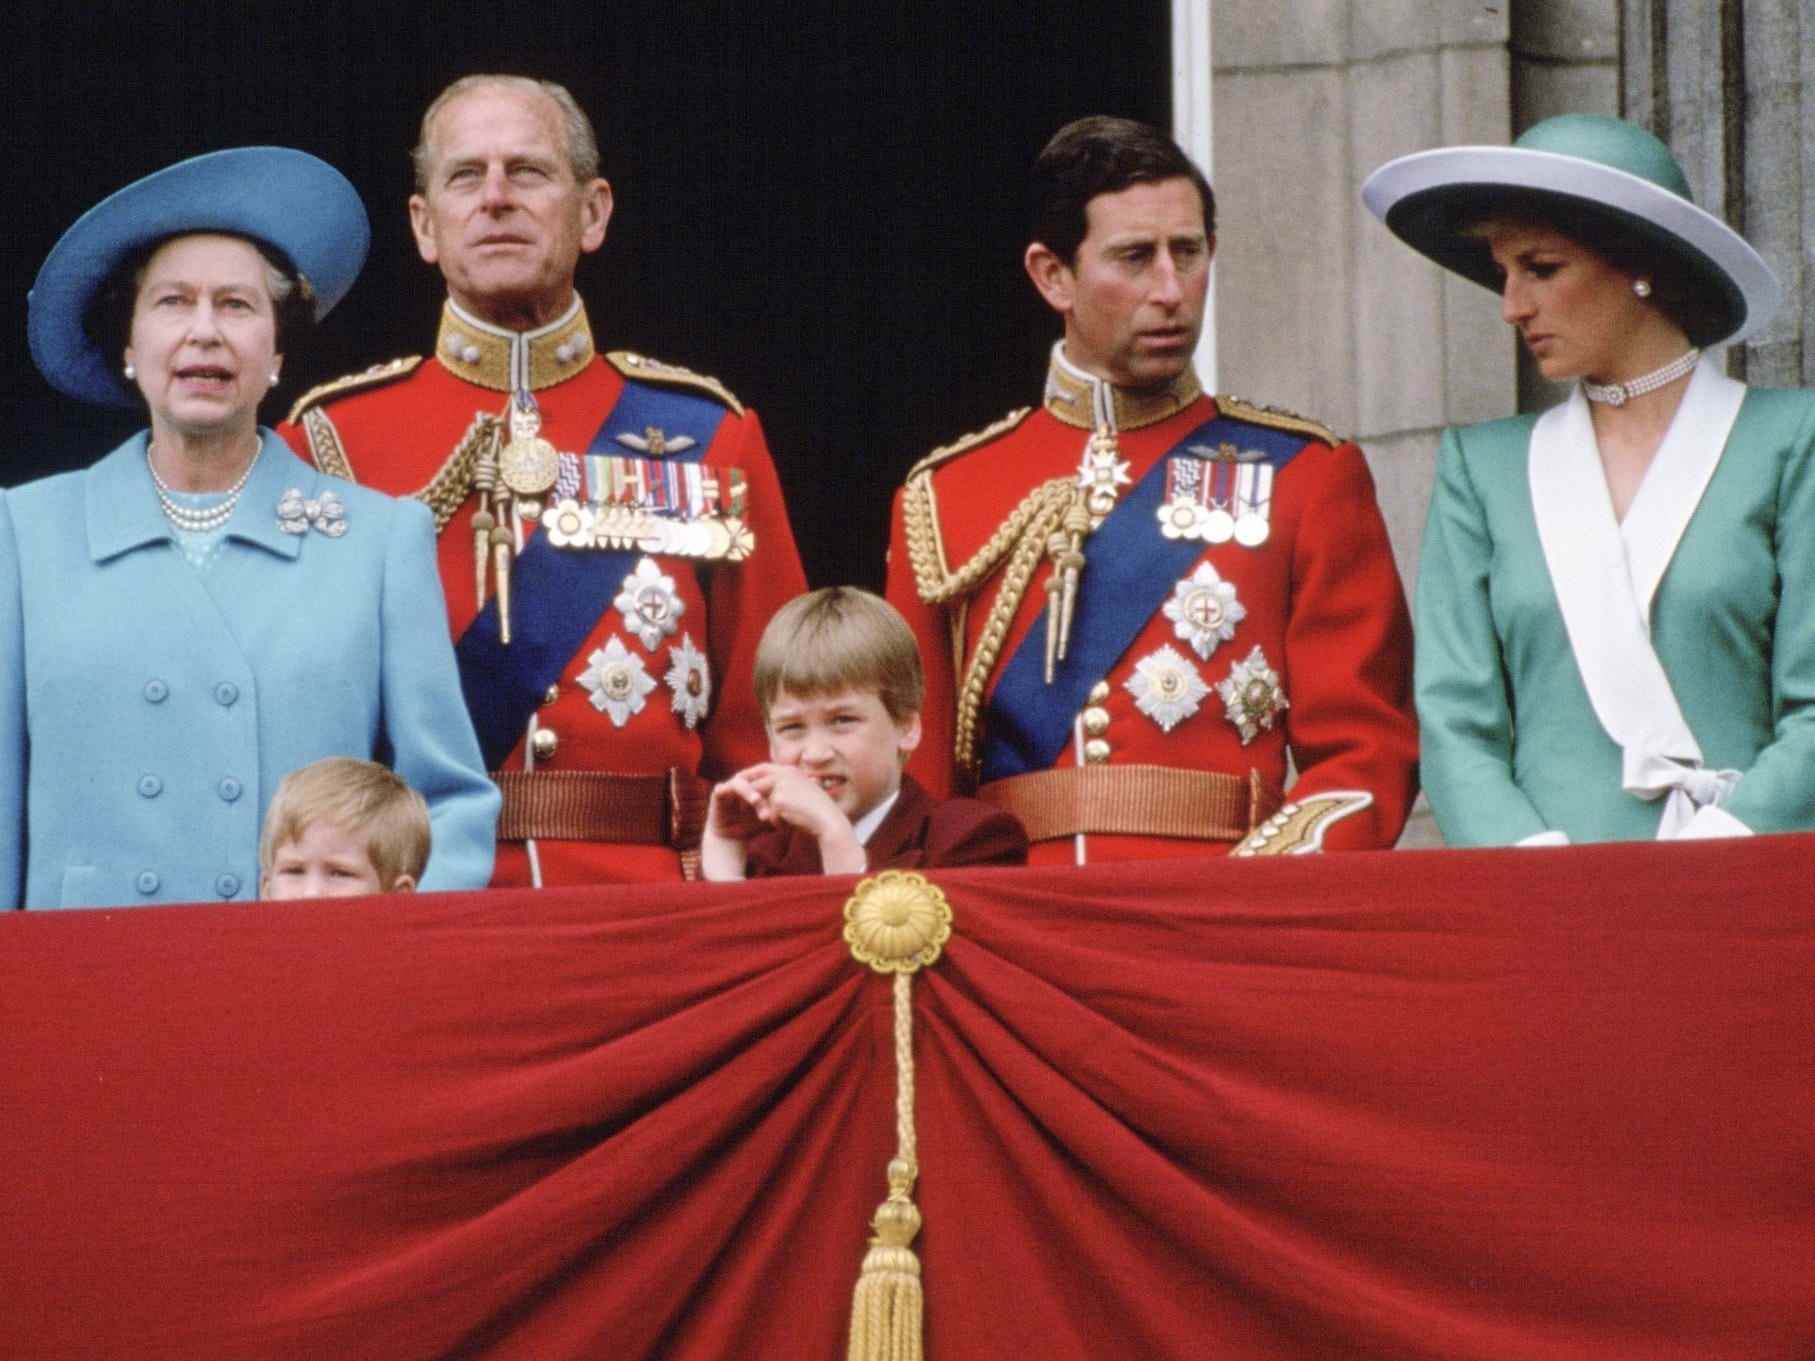 Queen Elizabeth, Prinz Philip, Prinz Harry, Prinz William, Prinz Charles und Prinzessin Diana stehen auf einem Balkon.